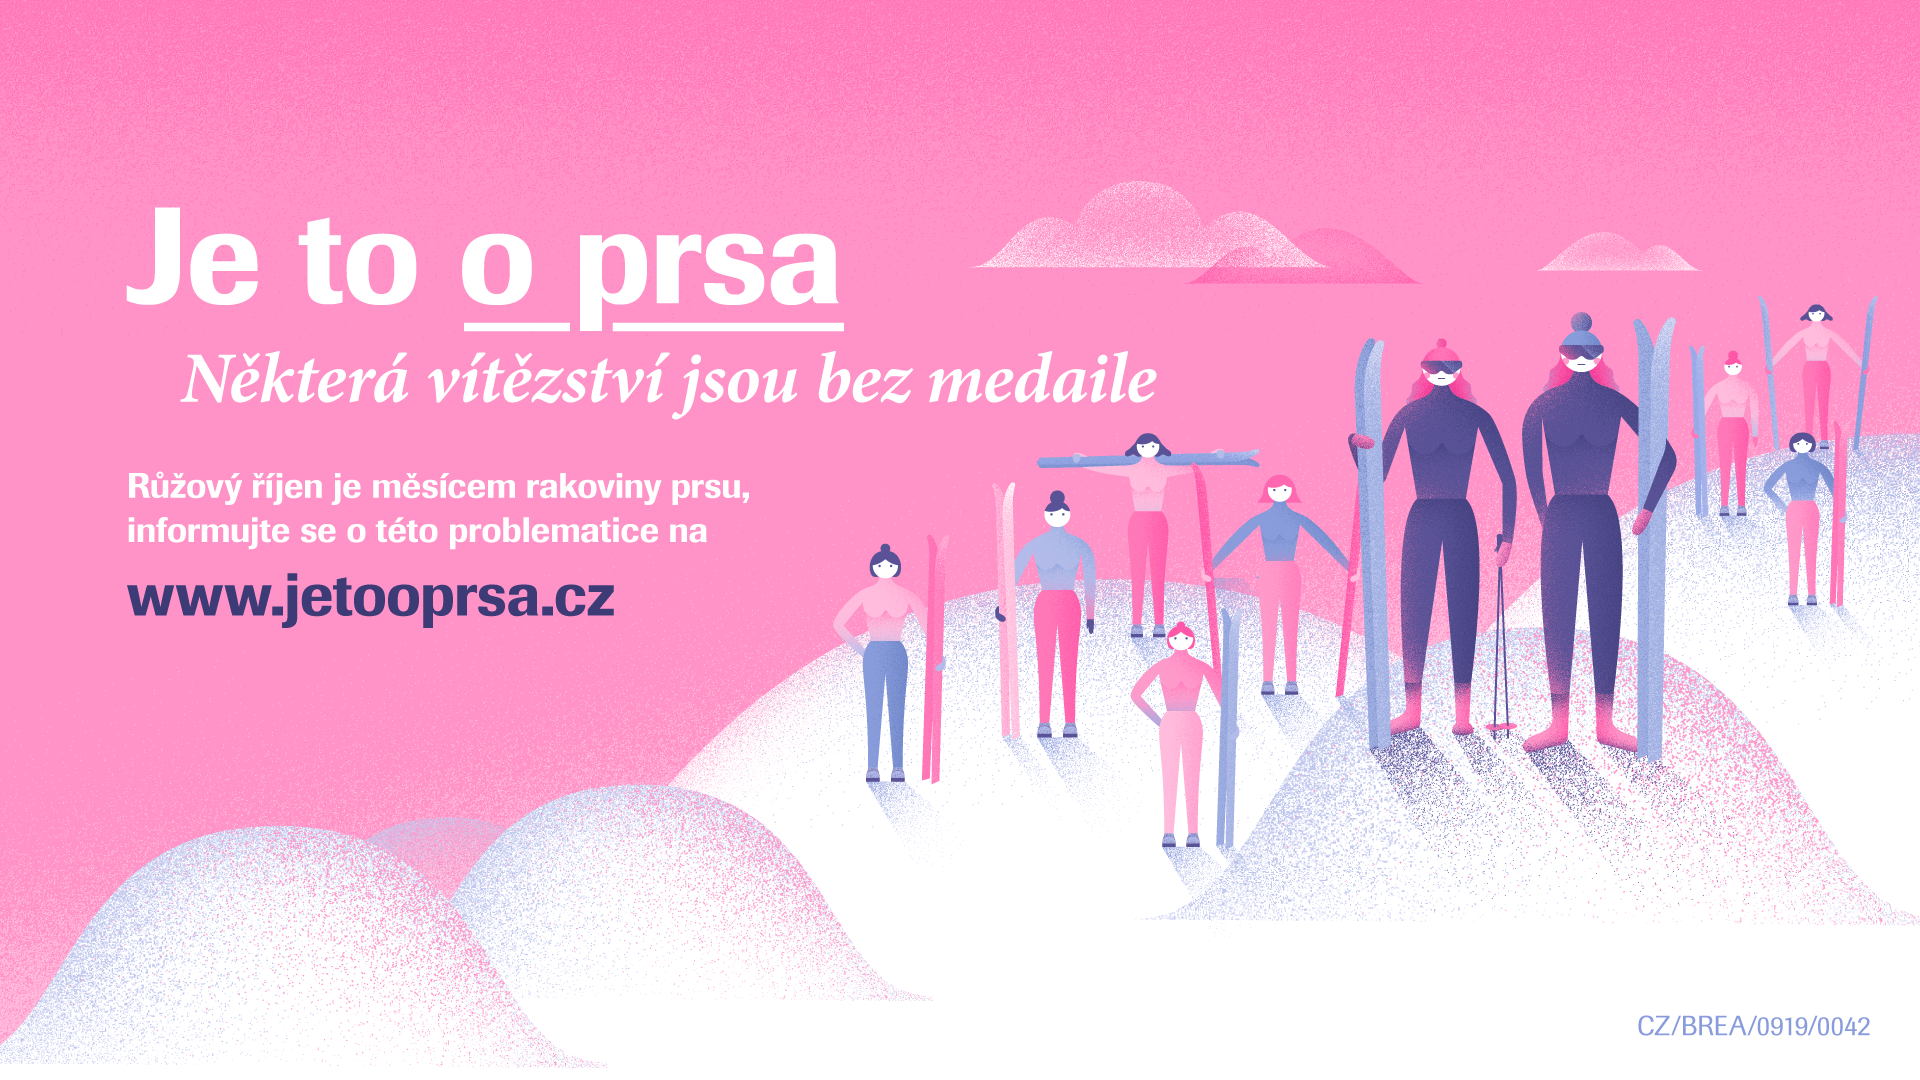 www.jetooprsa.cz